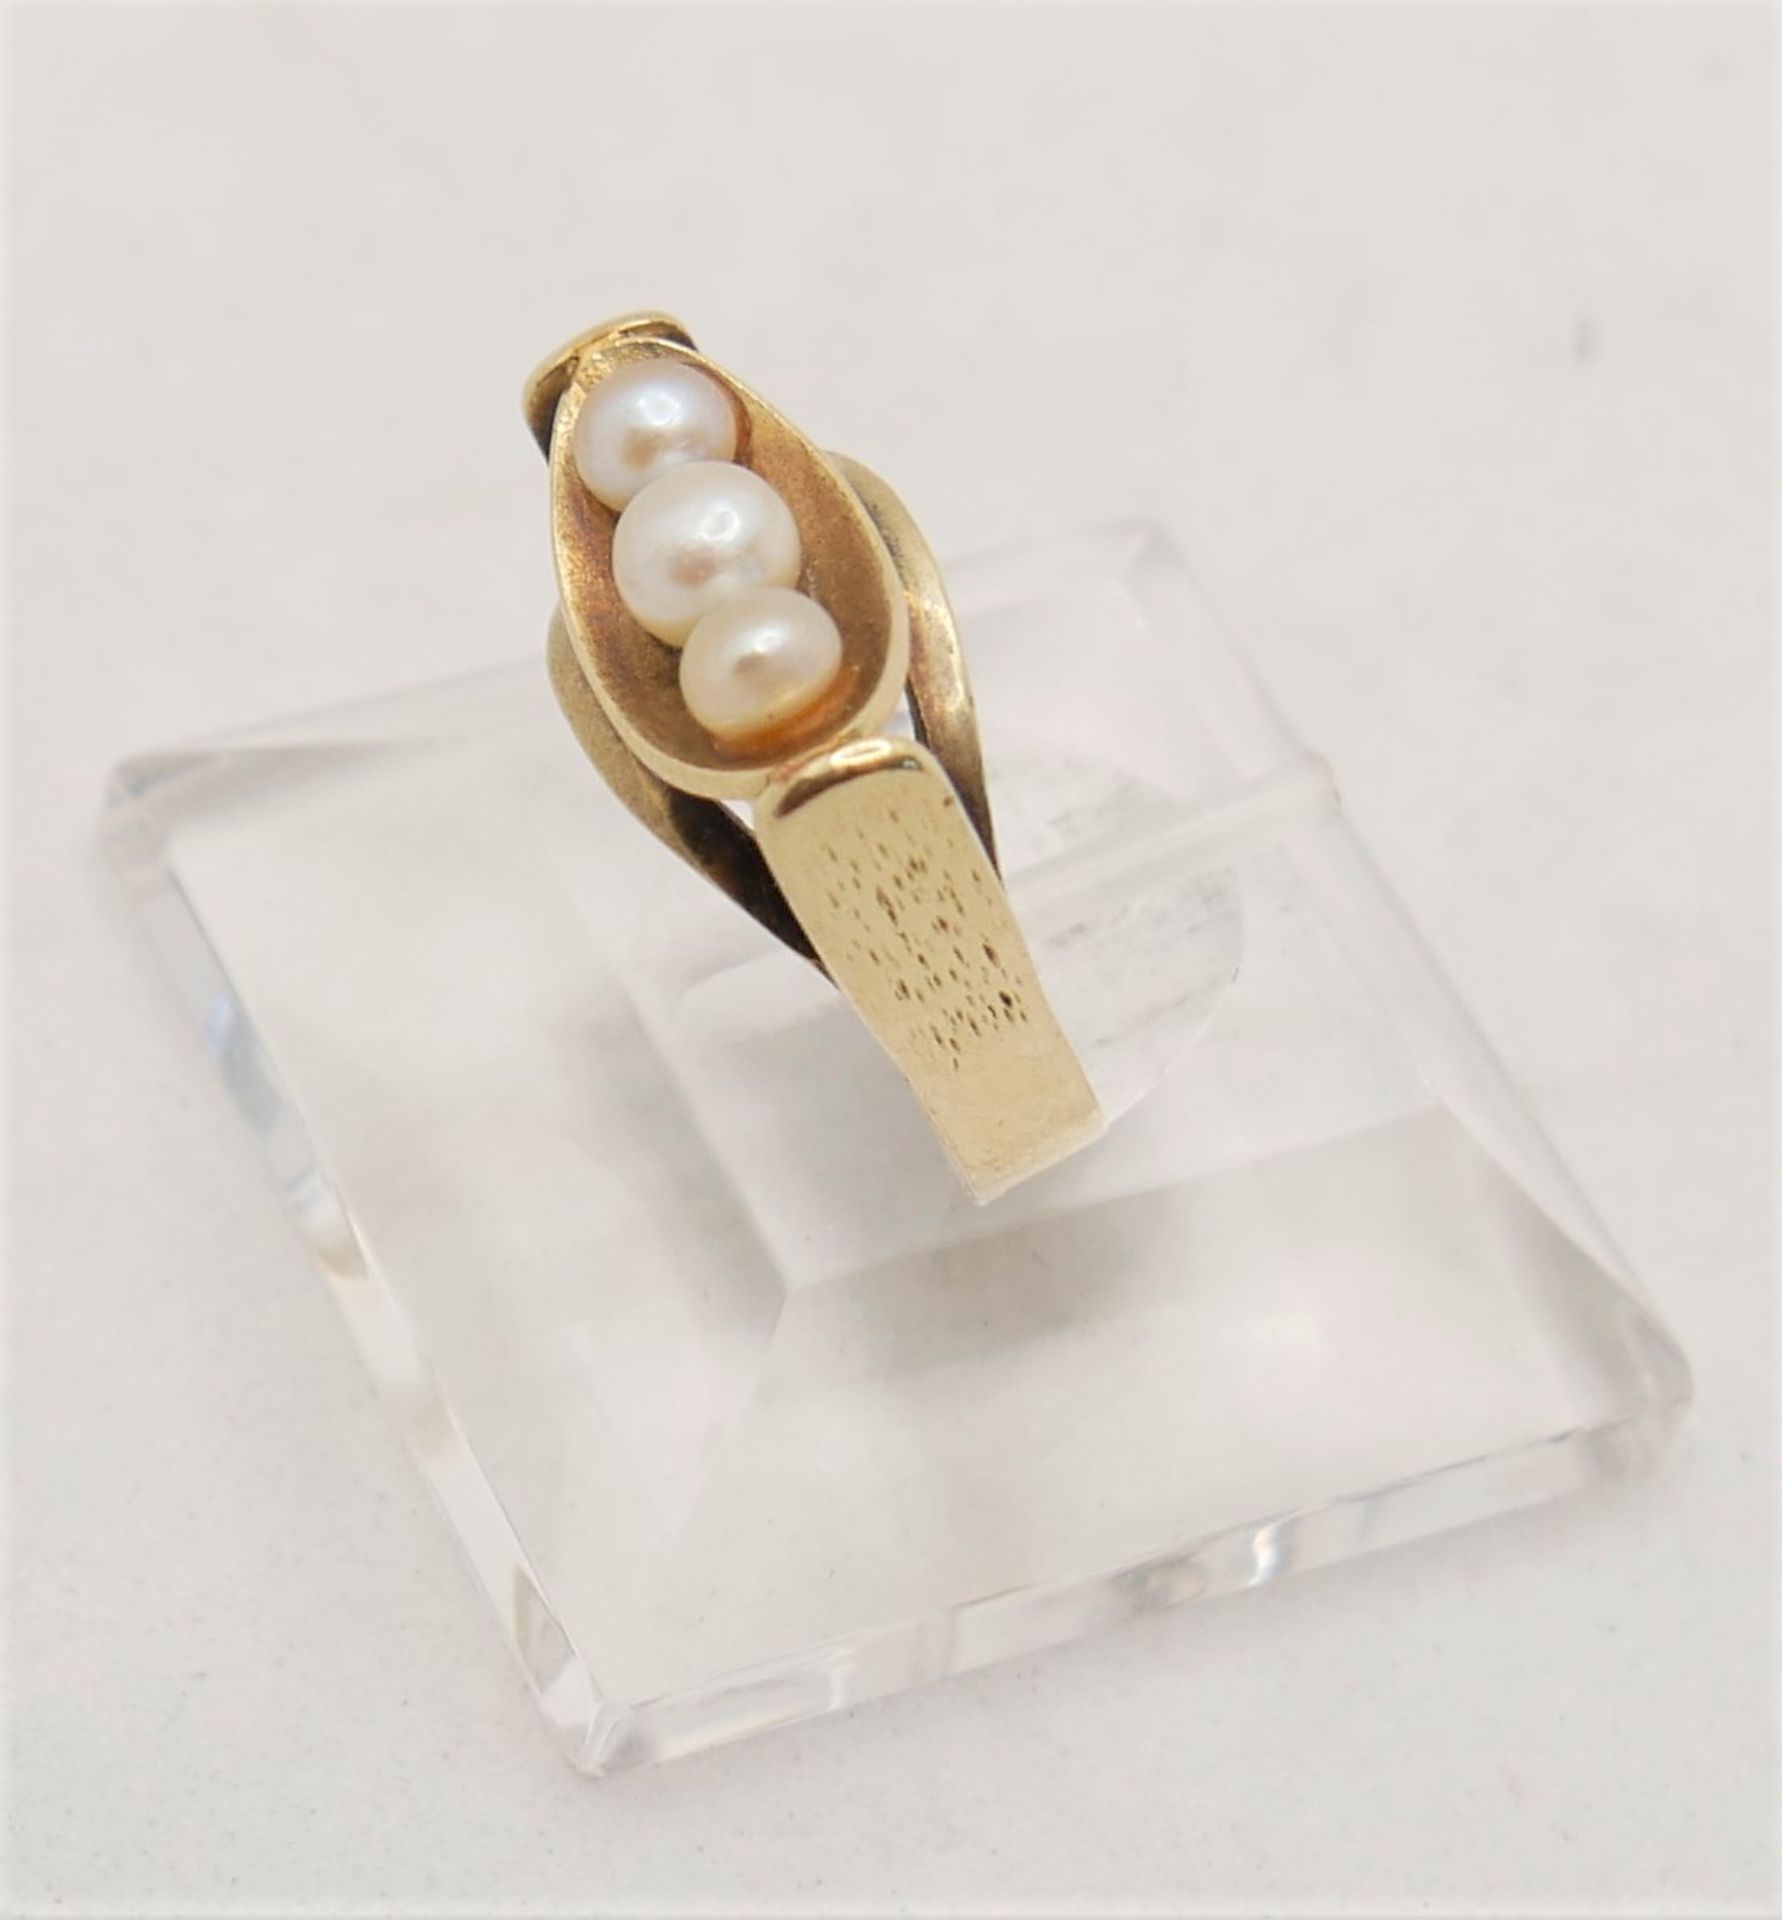 Damenring, 585er Gelbgold, besetzt mit 3 Perlen. Ringgröße 52 - Image 2 of 2